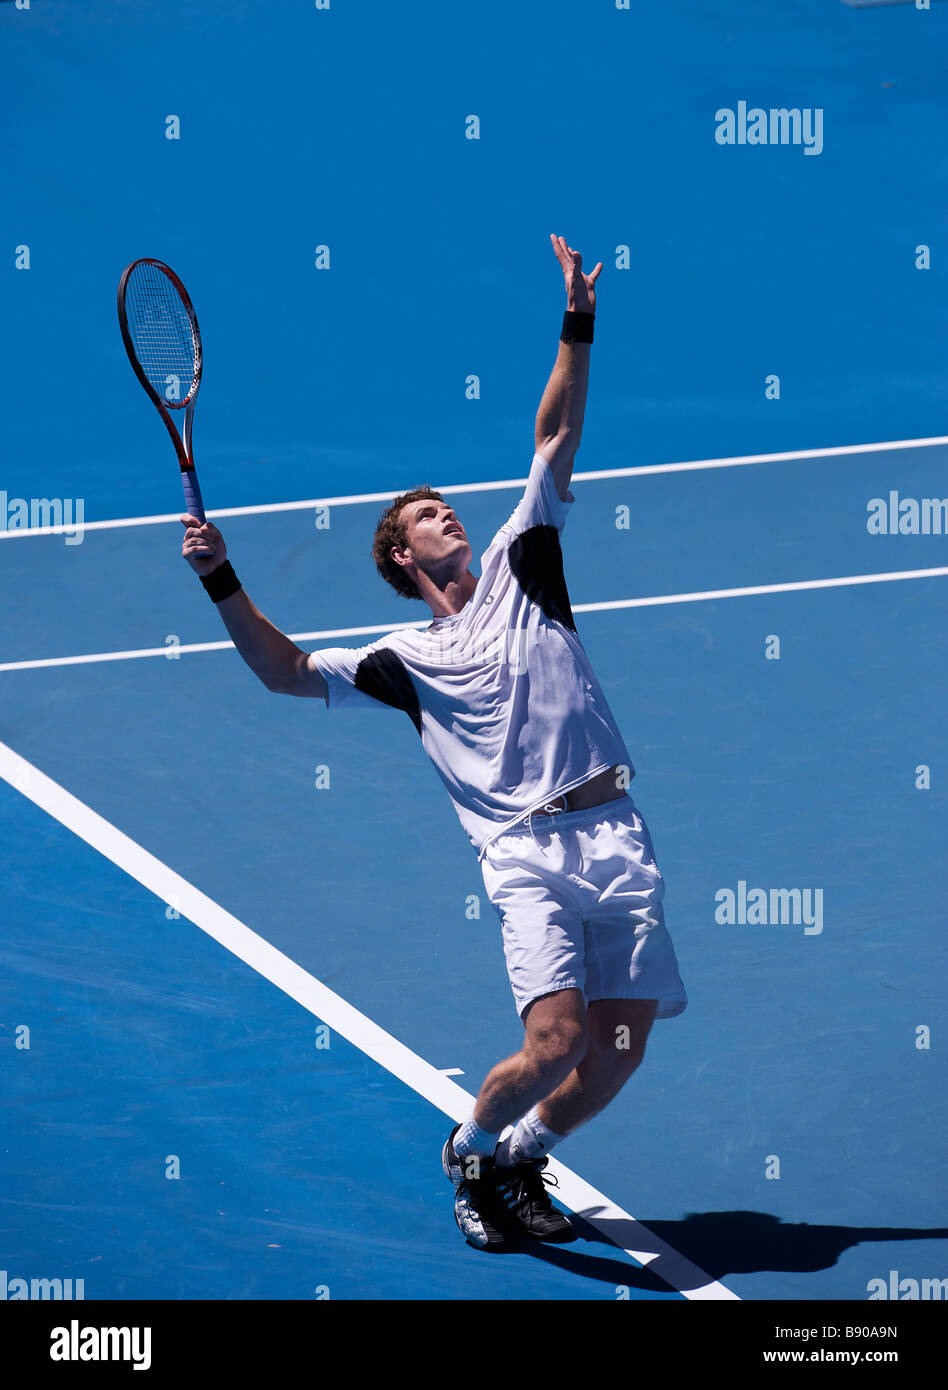 David Lloyd's tennis player Andy Murray de la Grande-Bretagne au cours de l'Open d'Australie 2009 Grand Chelem à Melbourne Banque D'Images